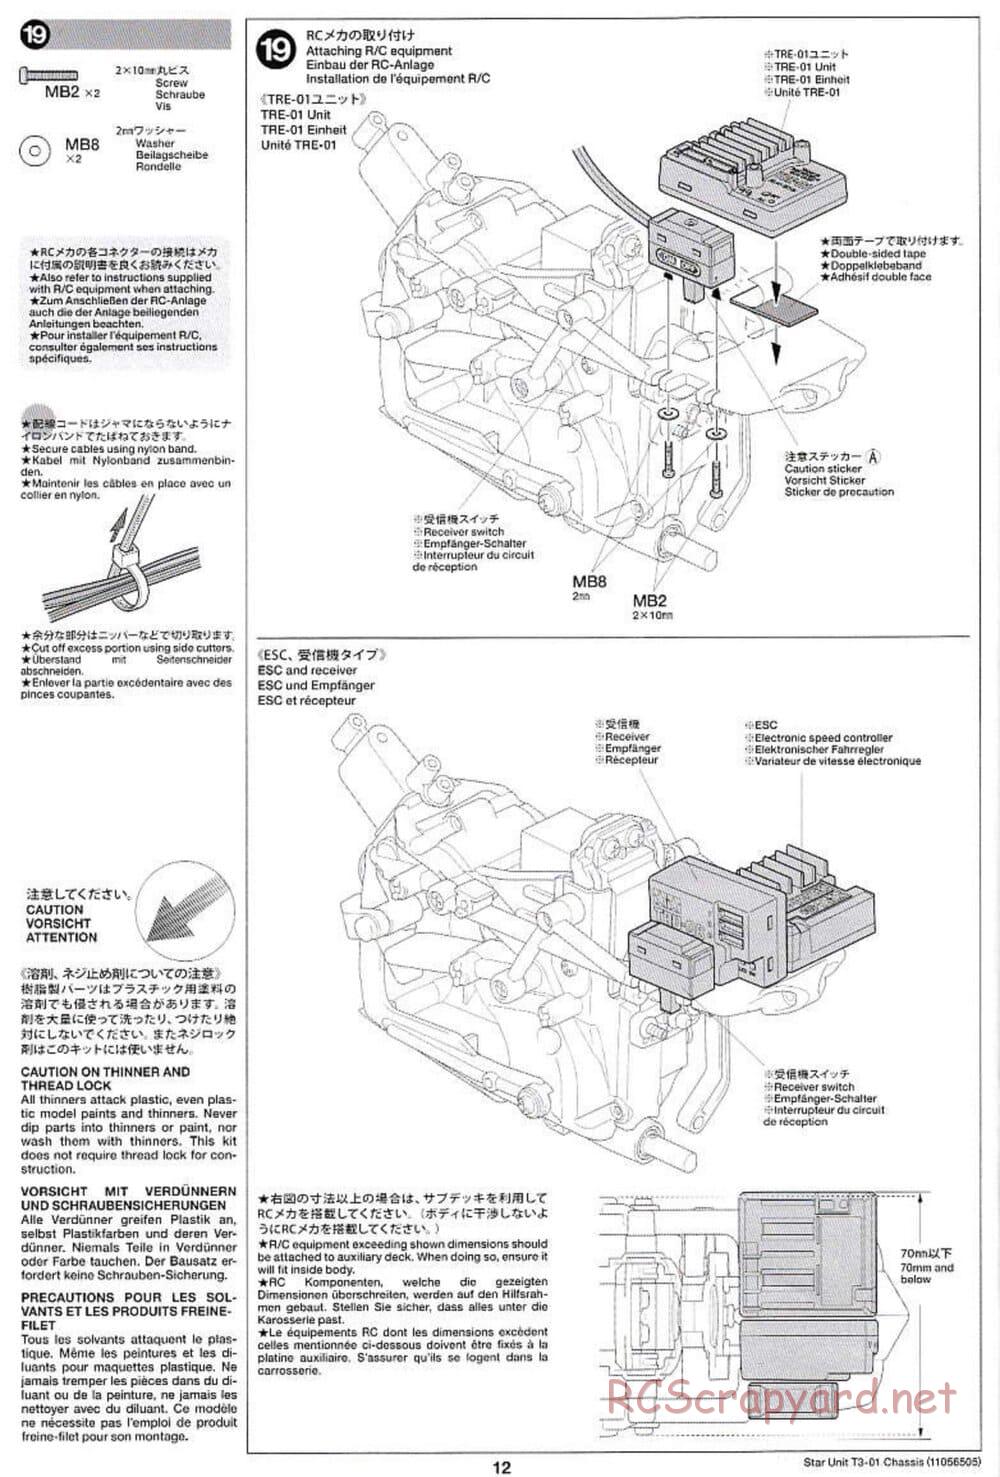 Tamiya - T3-01 Chassis - Manual - Page 12